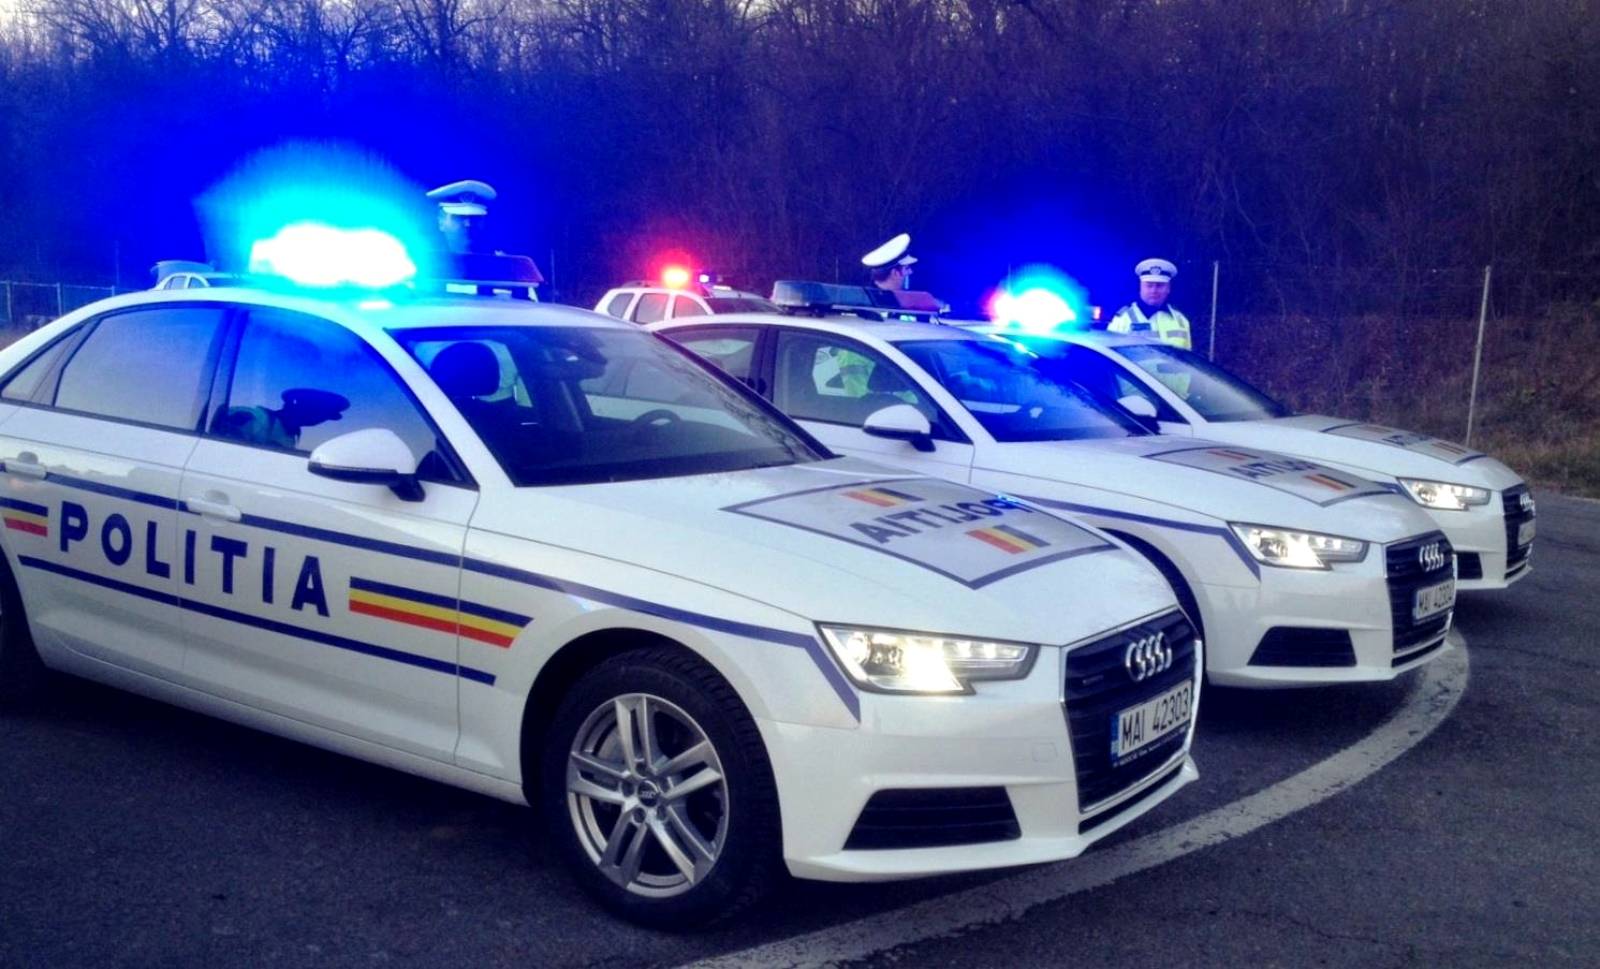 Polisa ubezpieczeniowa rumuńskiej policji